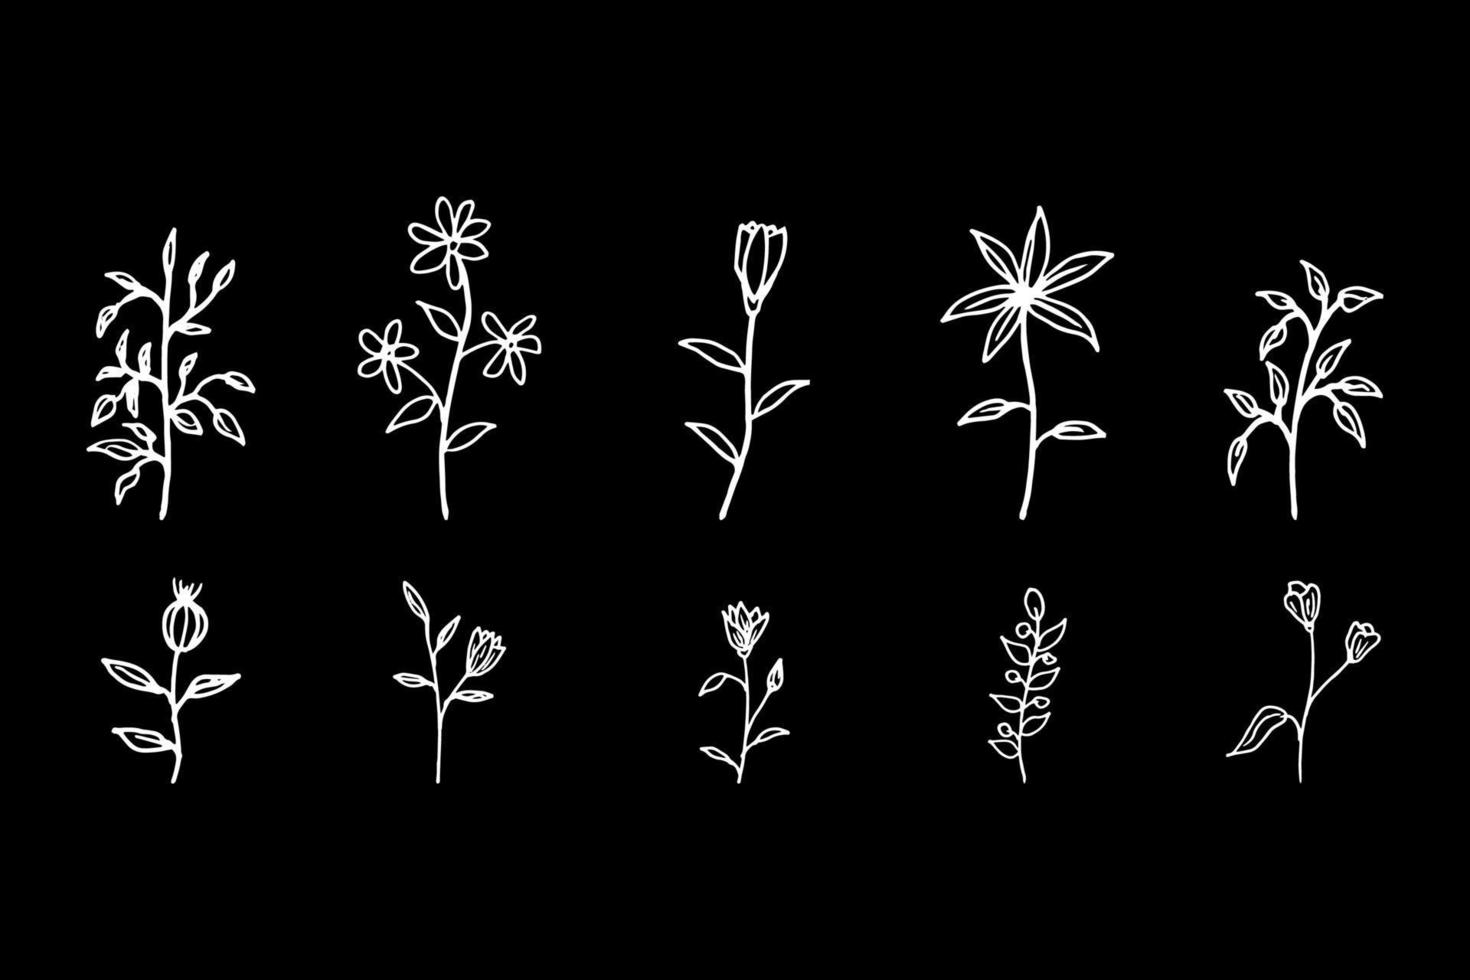 raccolta di vettore di fiori disegnati a mano